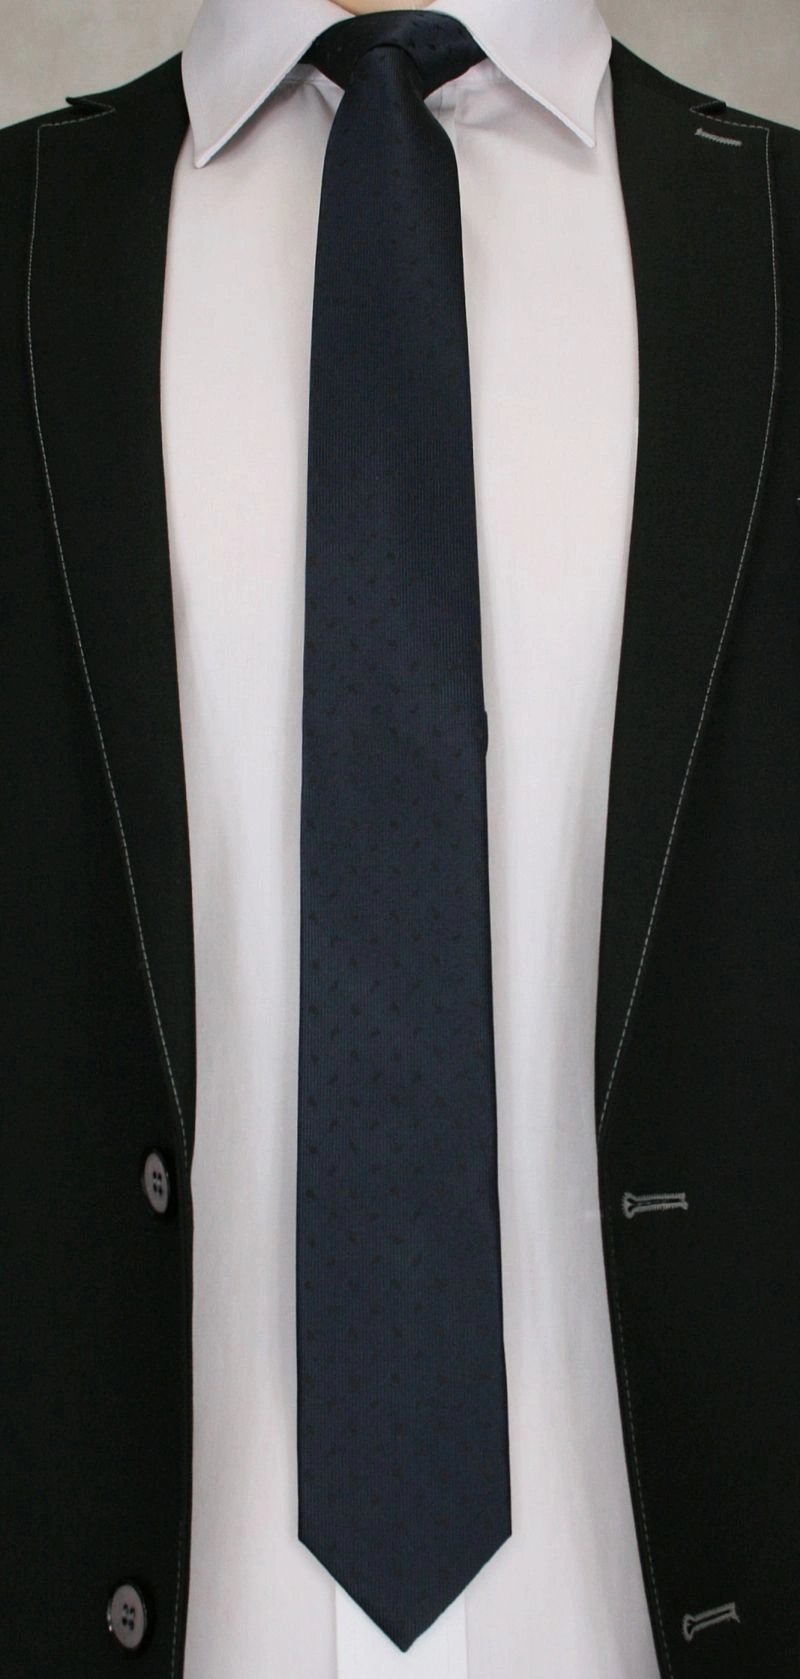 Krawat Męski w Czarny Wzorek, Błyszczący - 6 cm - Angelo di Monti, Ciemnogranatowy 